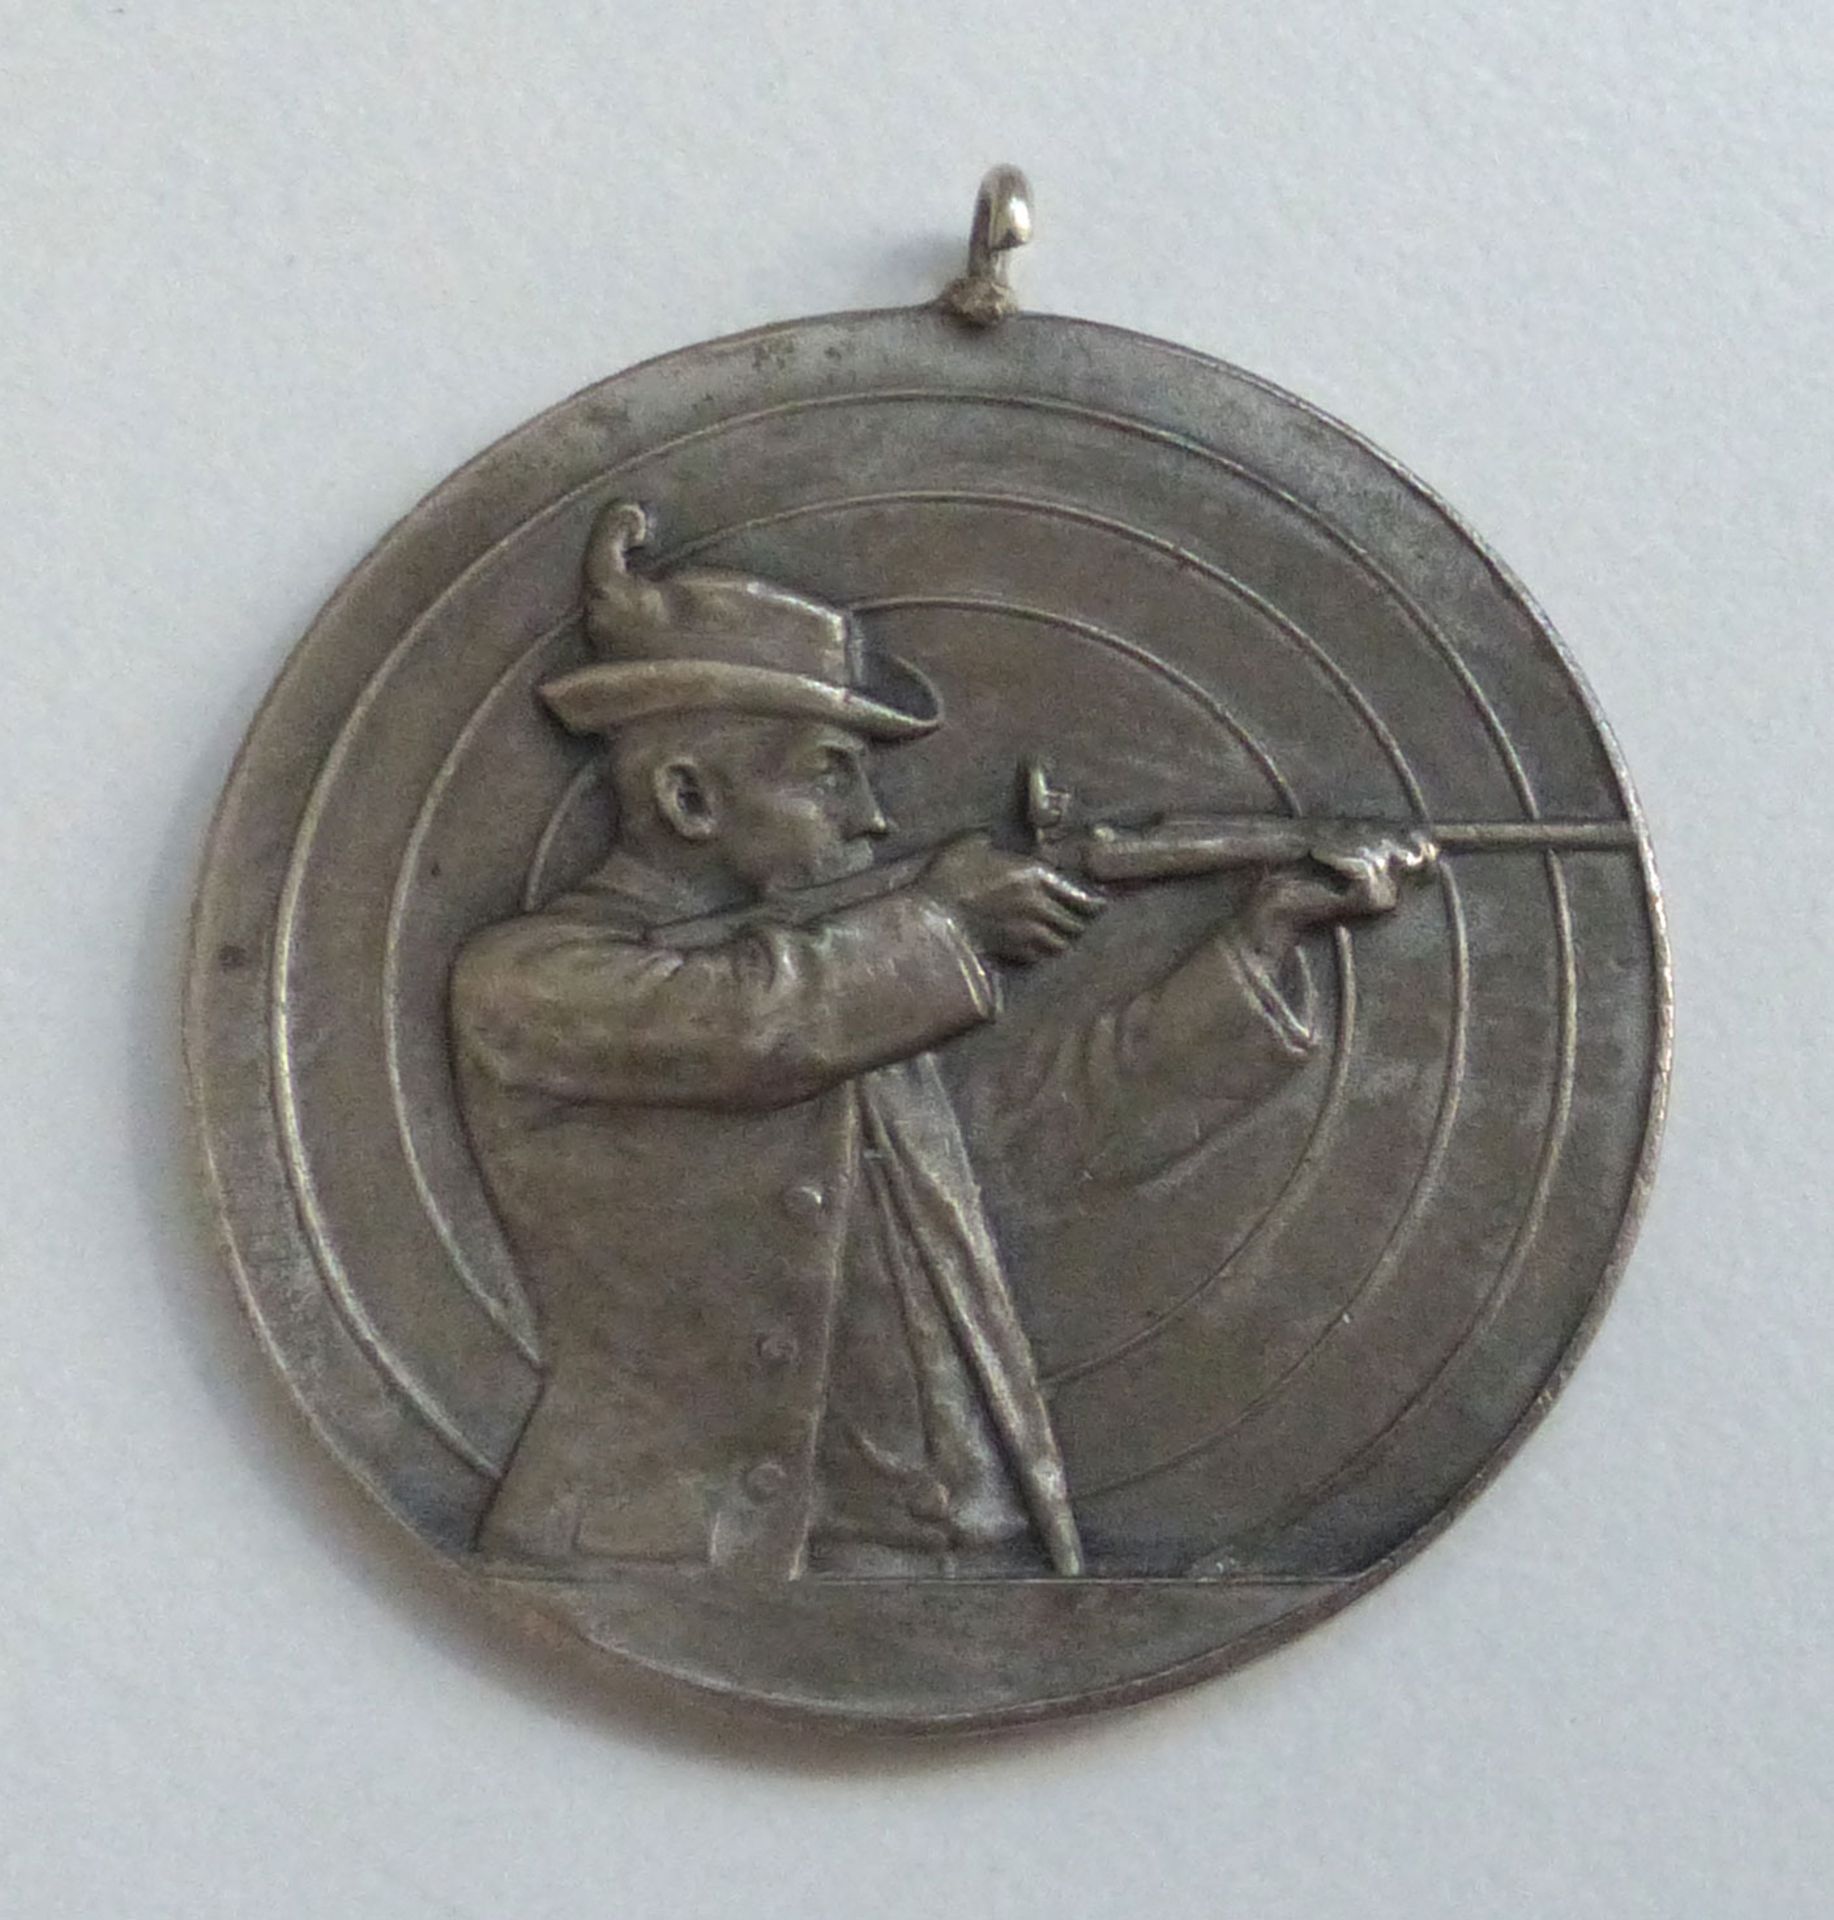 Schützen Medaille der 10. Gaumeisterschaft Mhm. 1929 silber 34mm Durchm. I-II